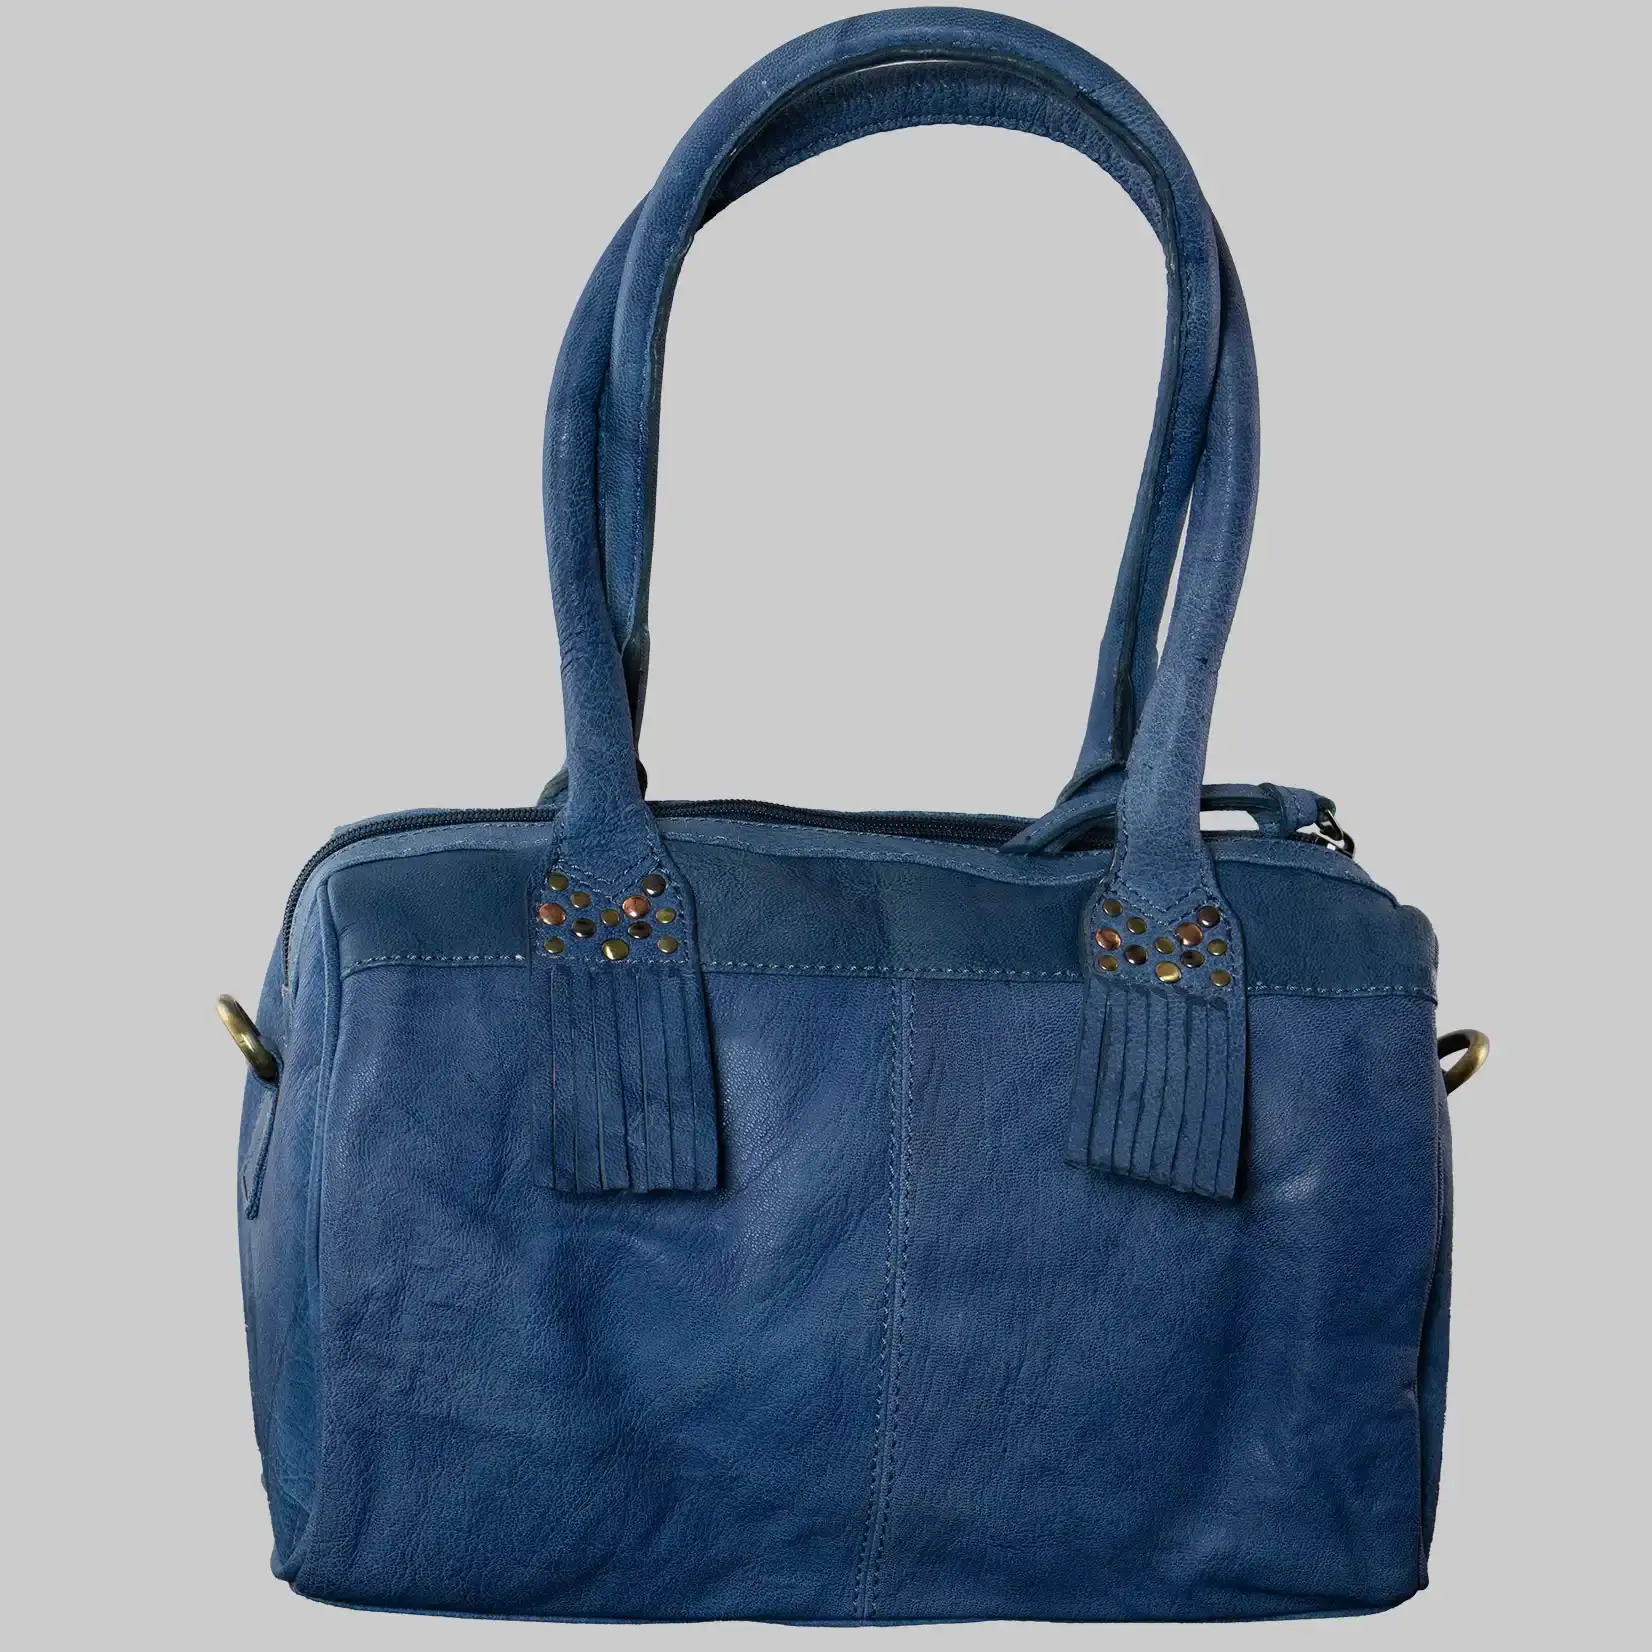 bruno banani Handtasche Damen Leder - Blau - Nieten Verzierung - Abnehmbarer Schultergurt - Reißverschluss